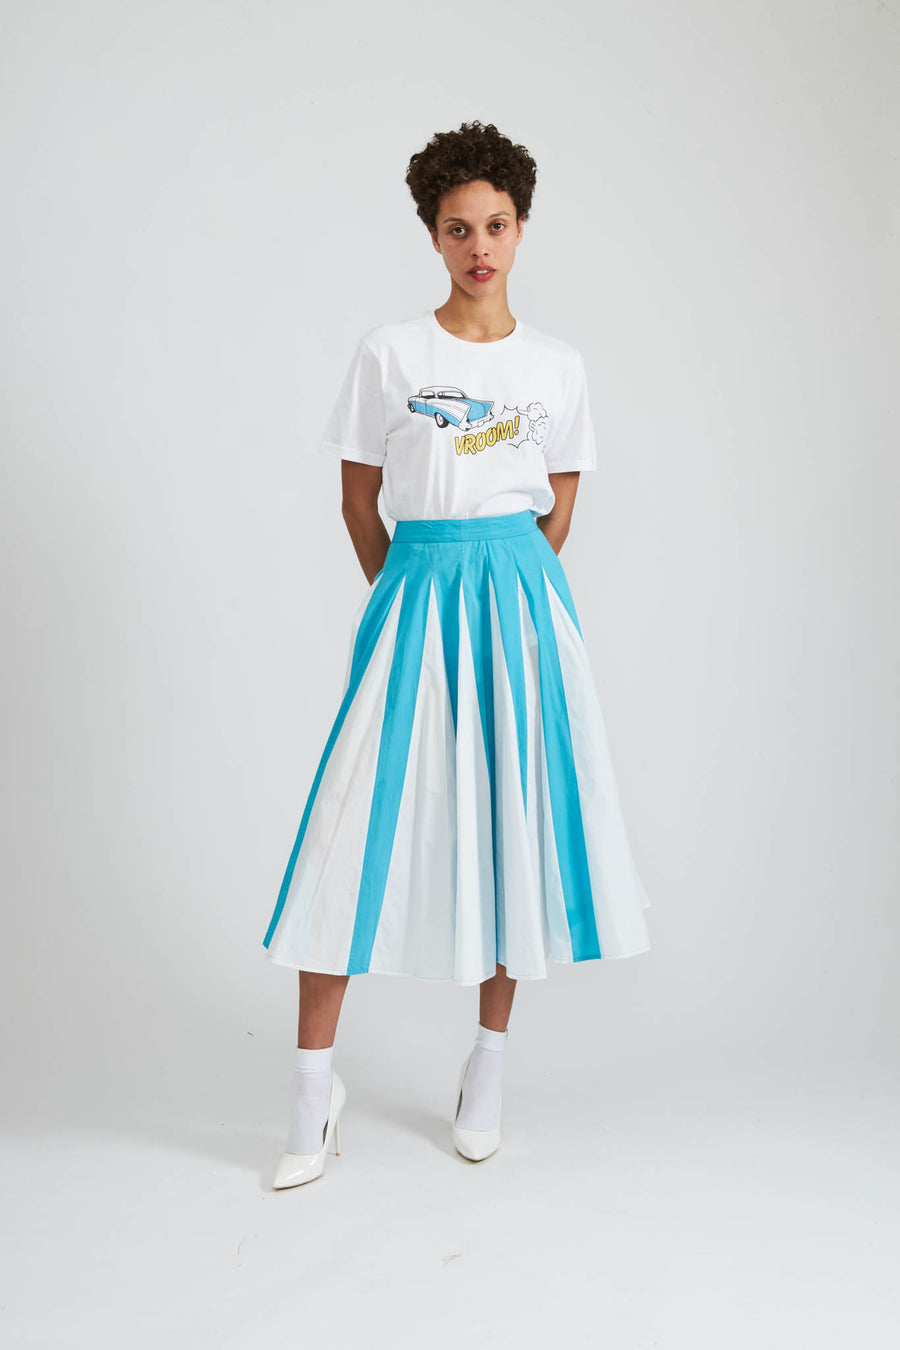 BATSHEVA - Freya Skirt in Scuba Blue